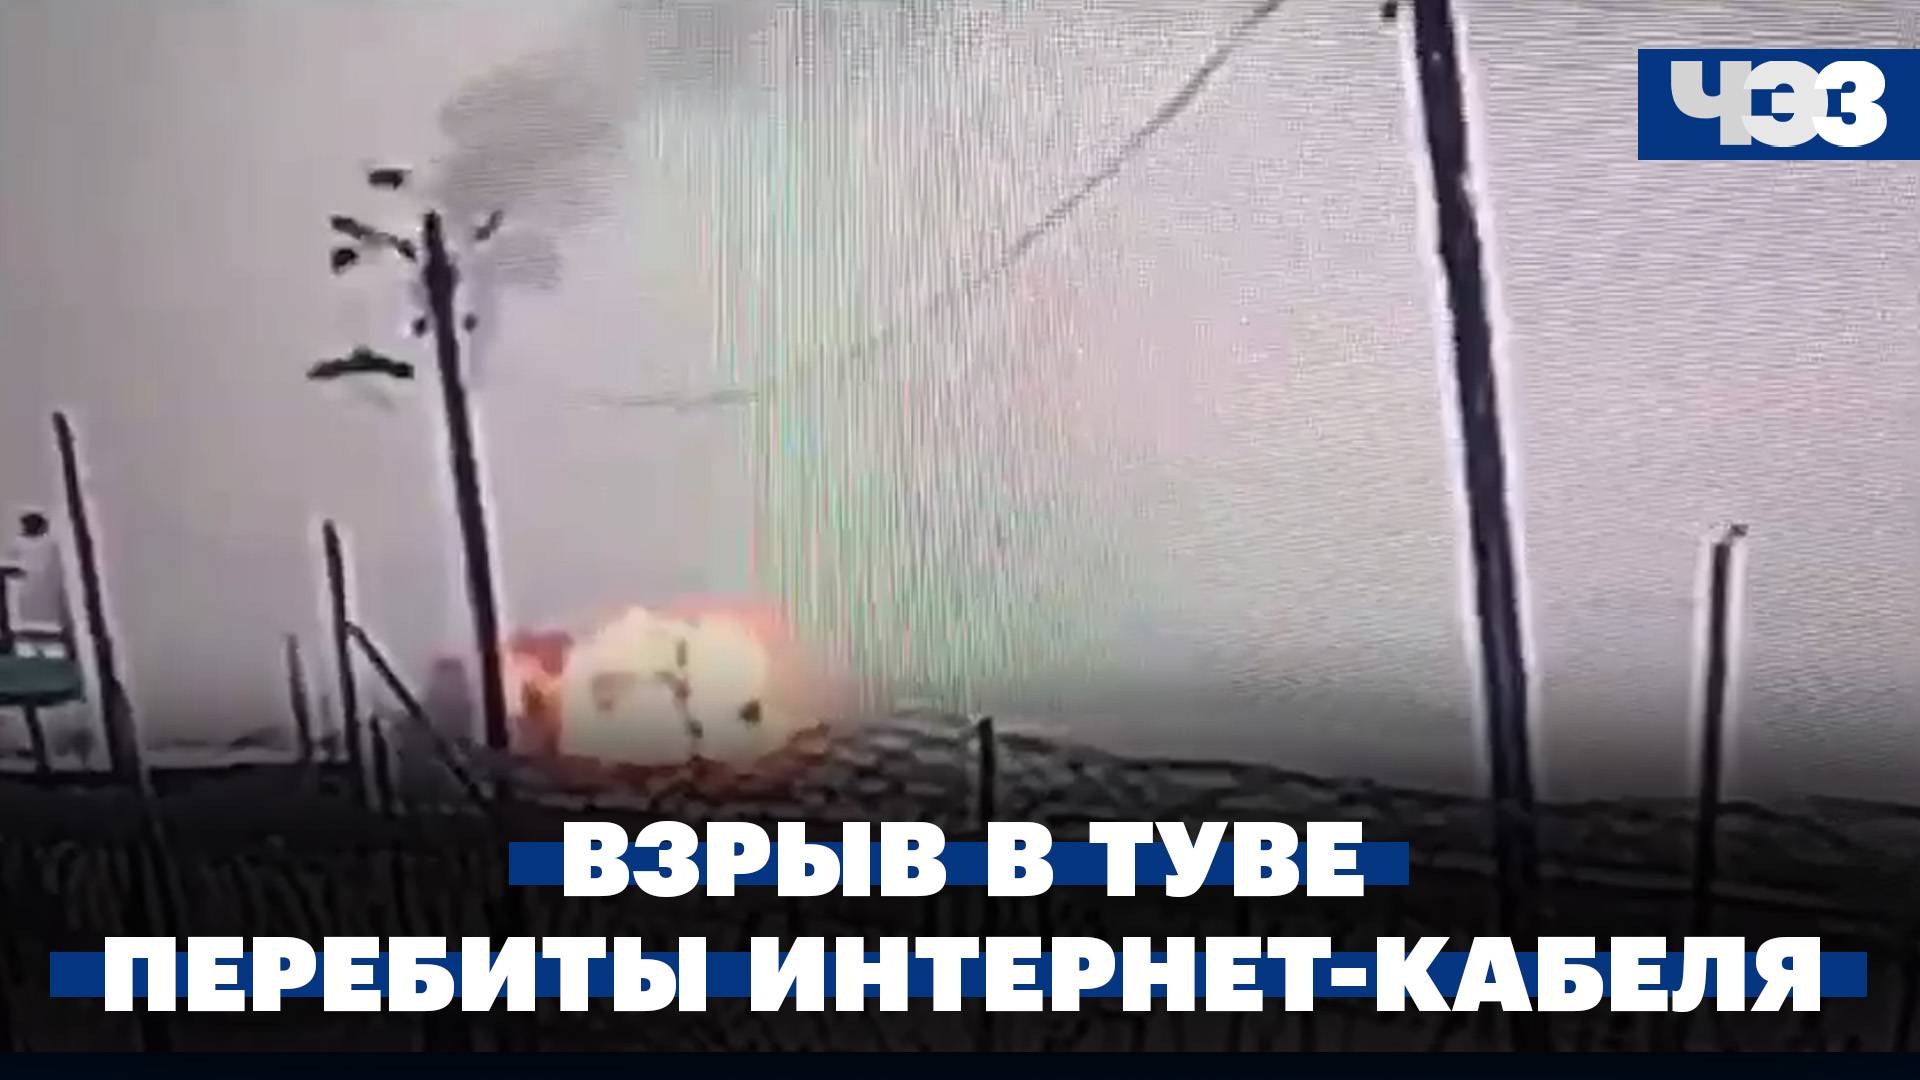 На котельной ТЭК-4 в Туве произошел взрыв. В Красном море перебиты четыре интернет-кабеля